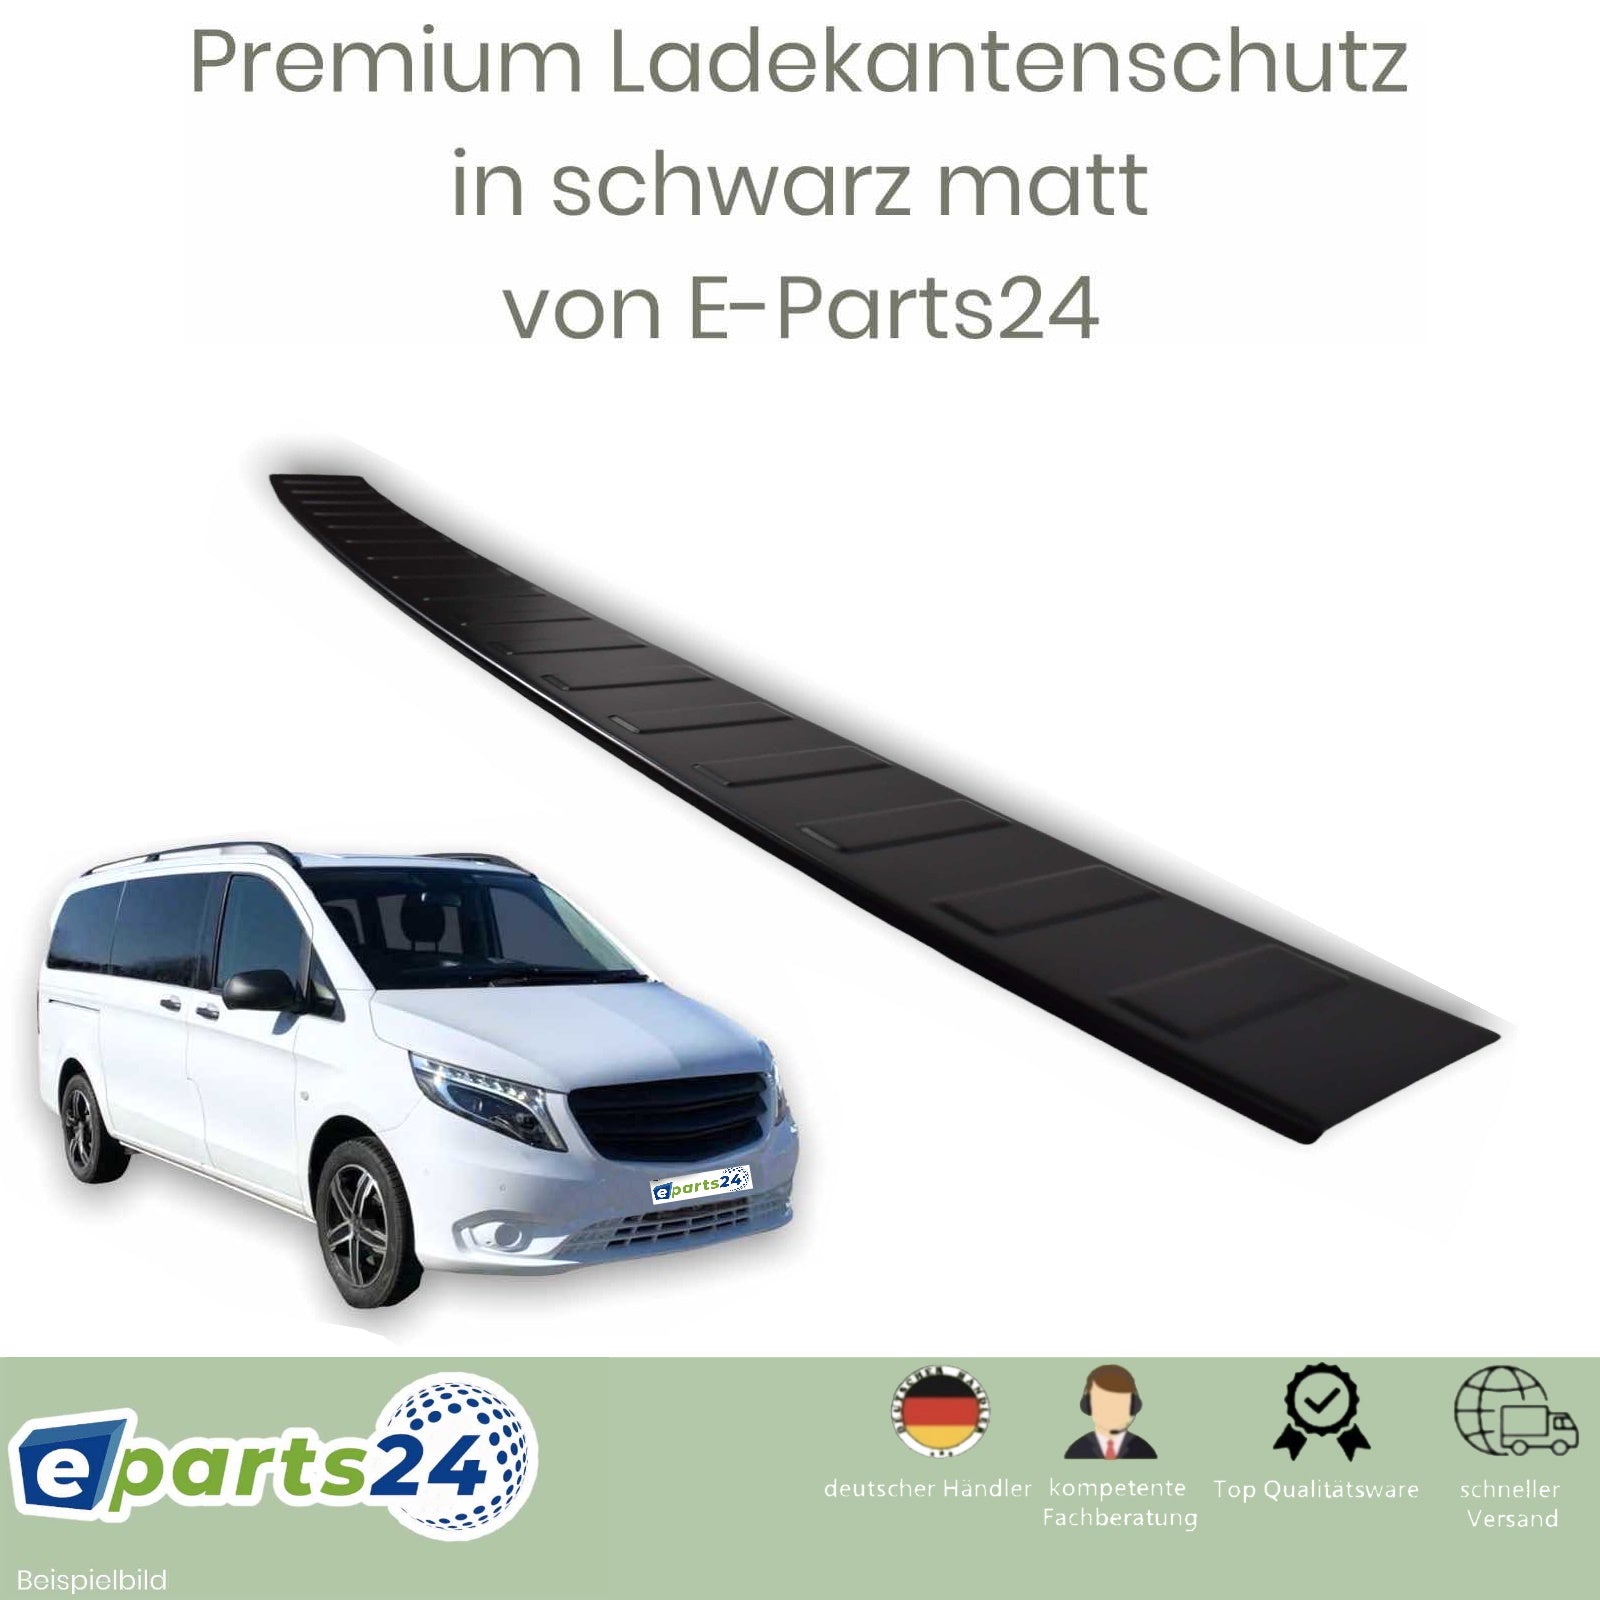 Ladekantenschutz für Mercedes V Klasse Vito 2014-2022 E-Parts24 mat – W447 schwarz